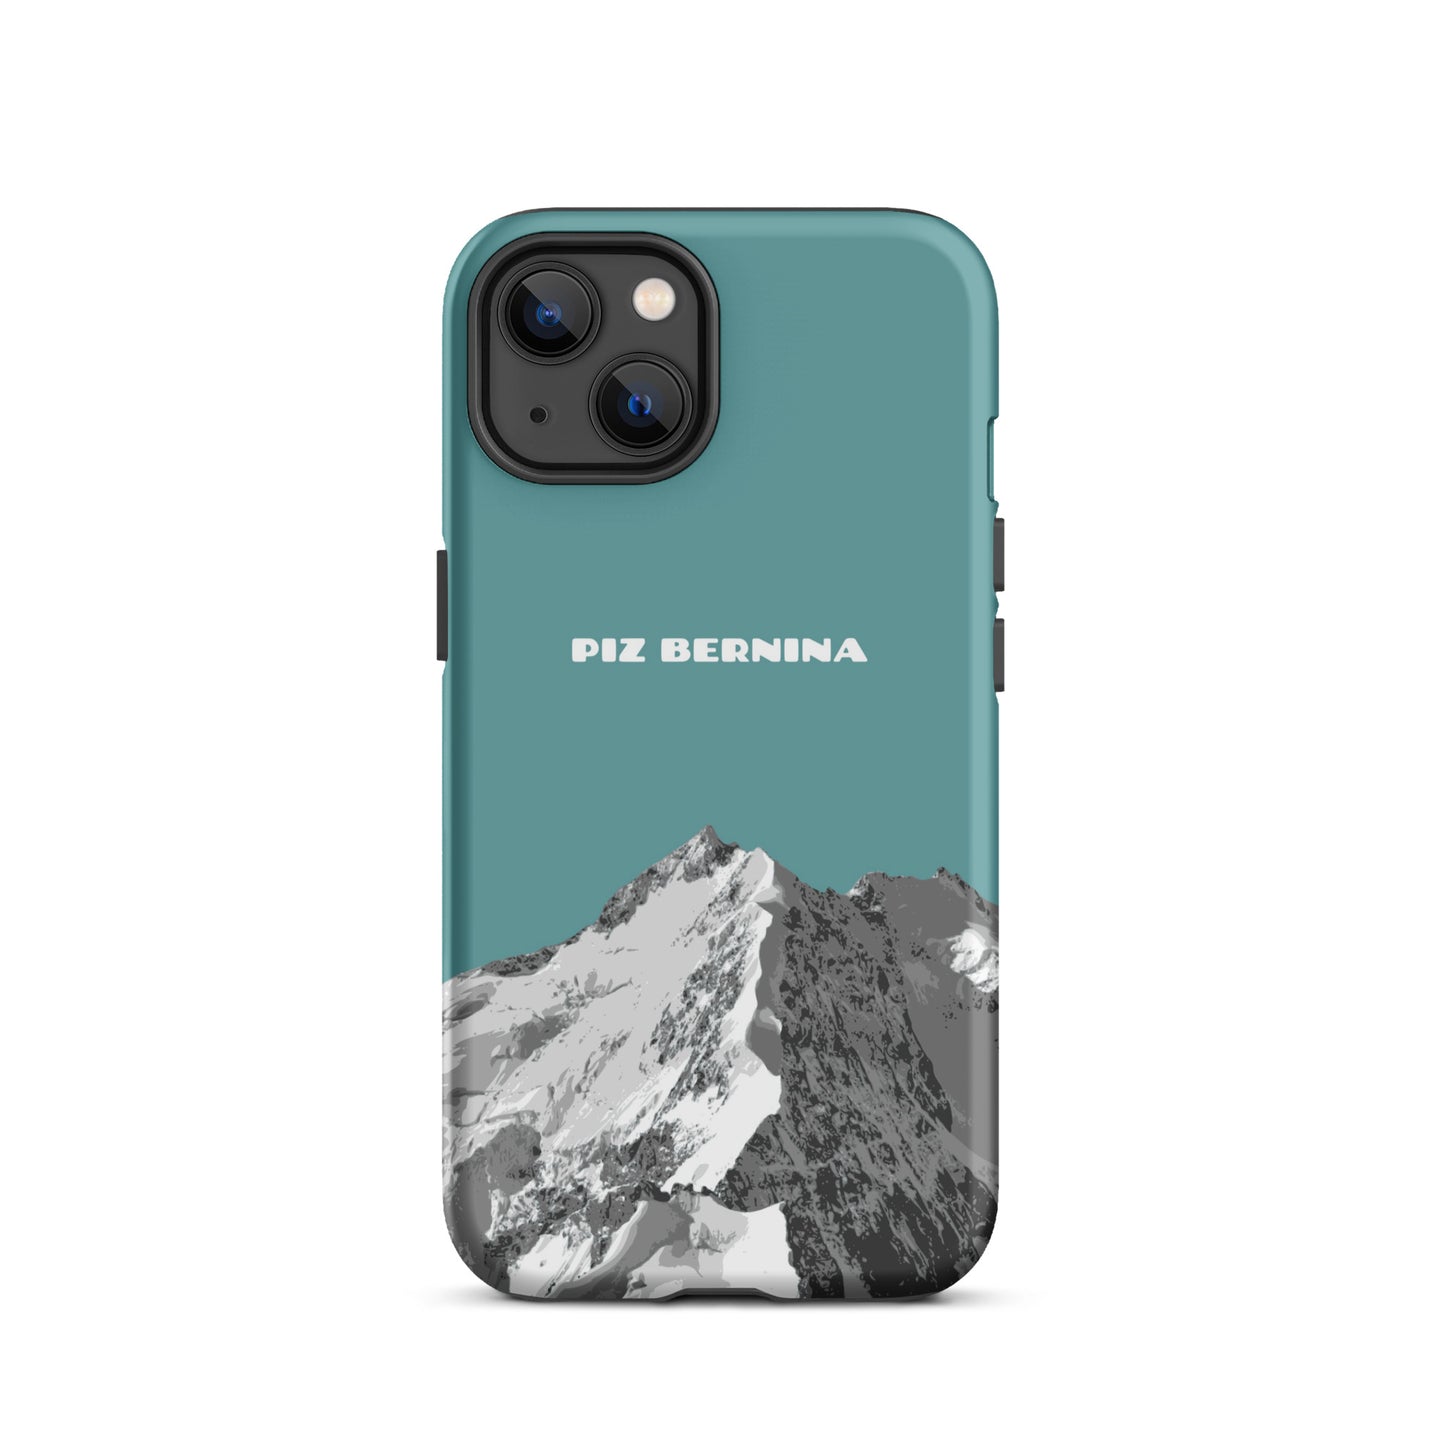 Hülle für das iPhone 13 von Apple in der Farbe Kadettenblau, dass den Piz Bernina in Graubünden zeigt.